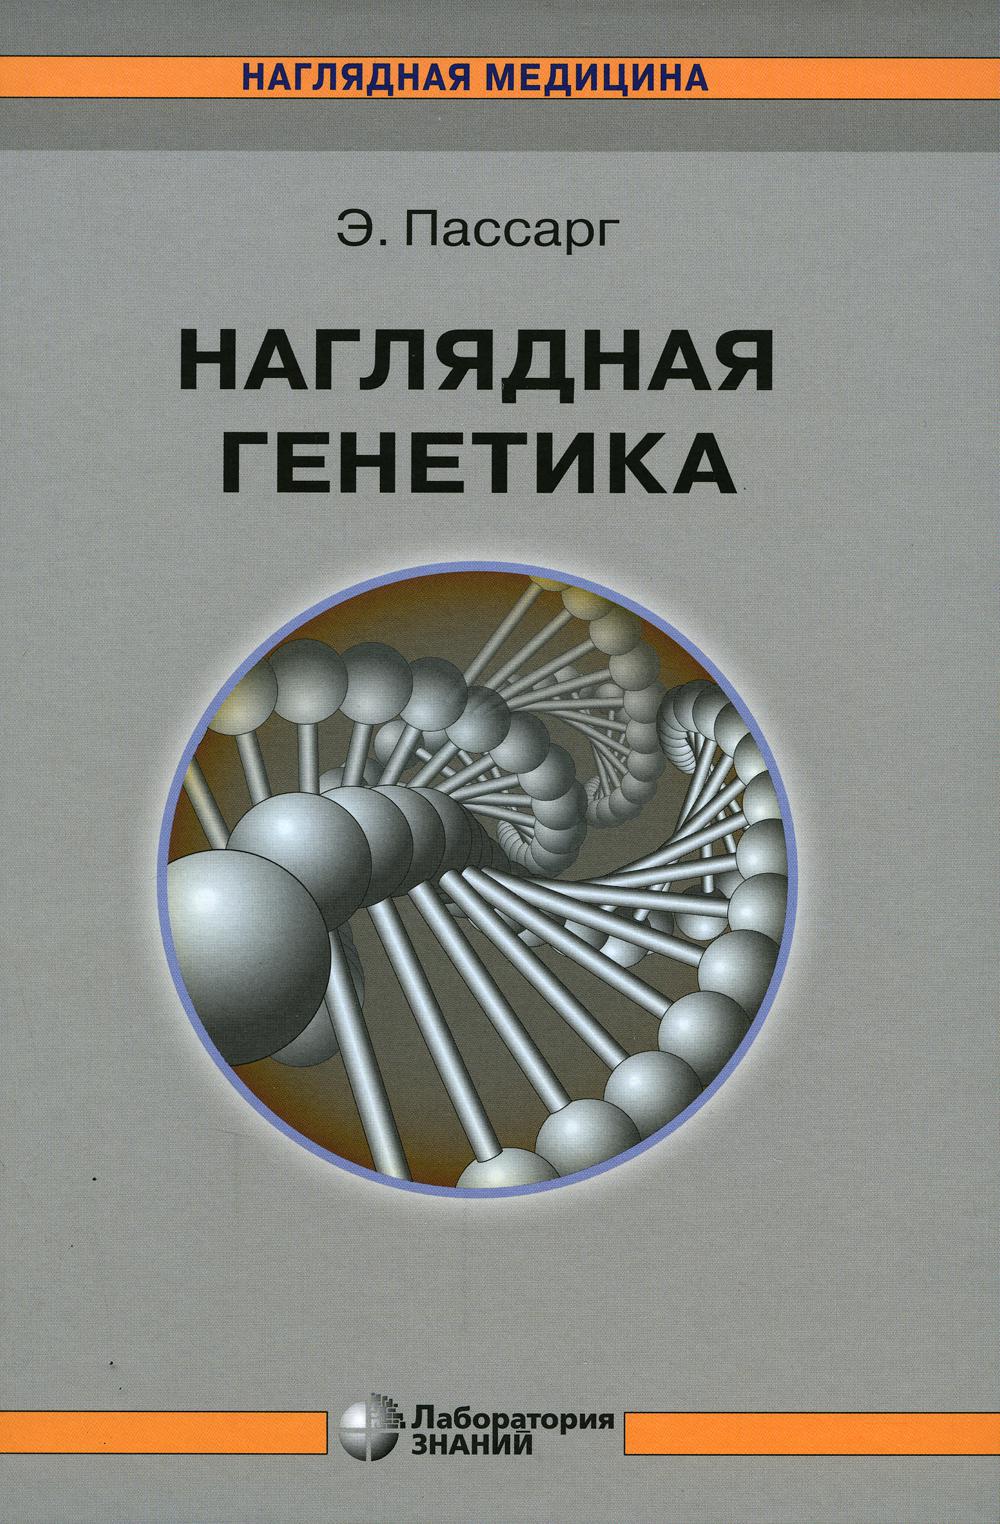 Наглядная генетика. 3-е изд